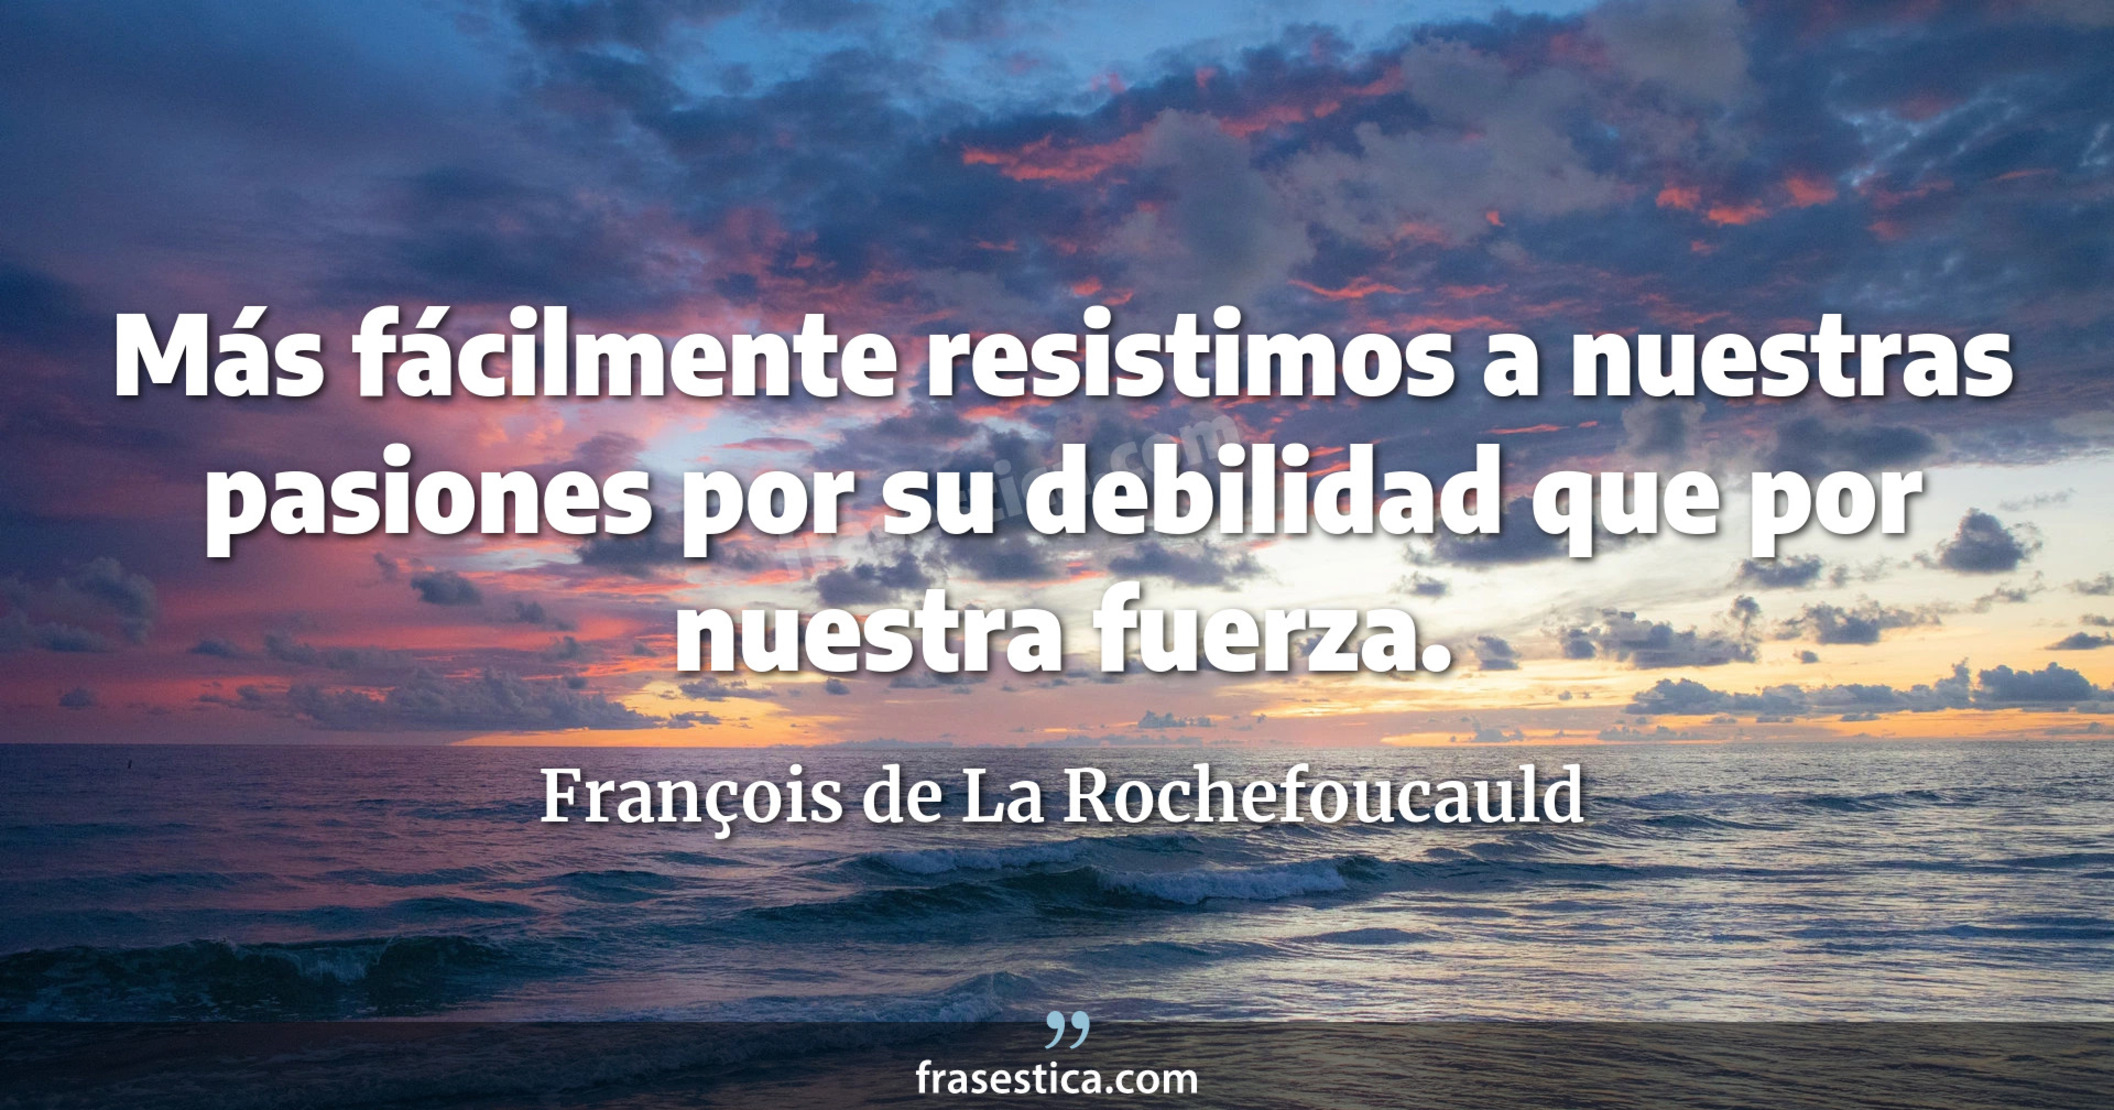 Más fácilmente resistimos a nuestras pasiones por su debilidad que por nuestra fuerza. - François de La Rochefoucauld